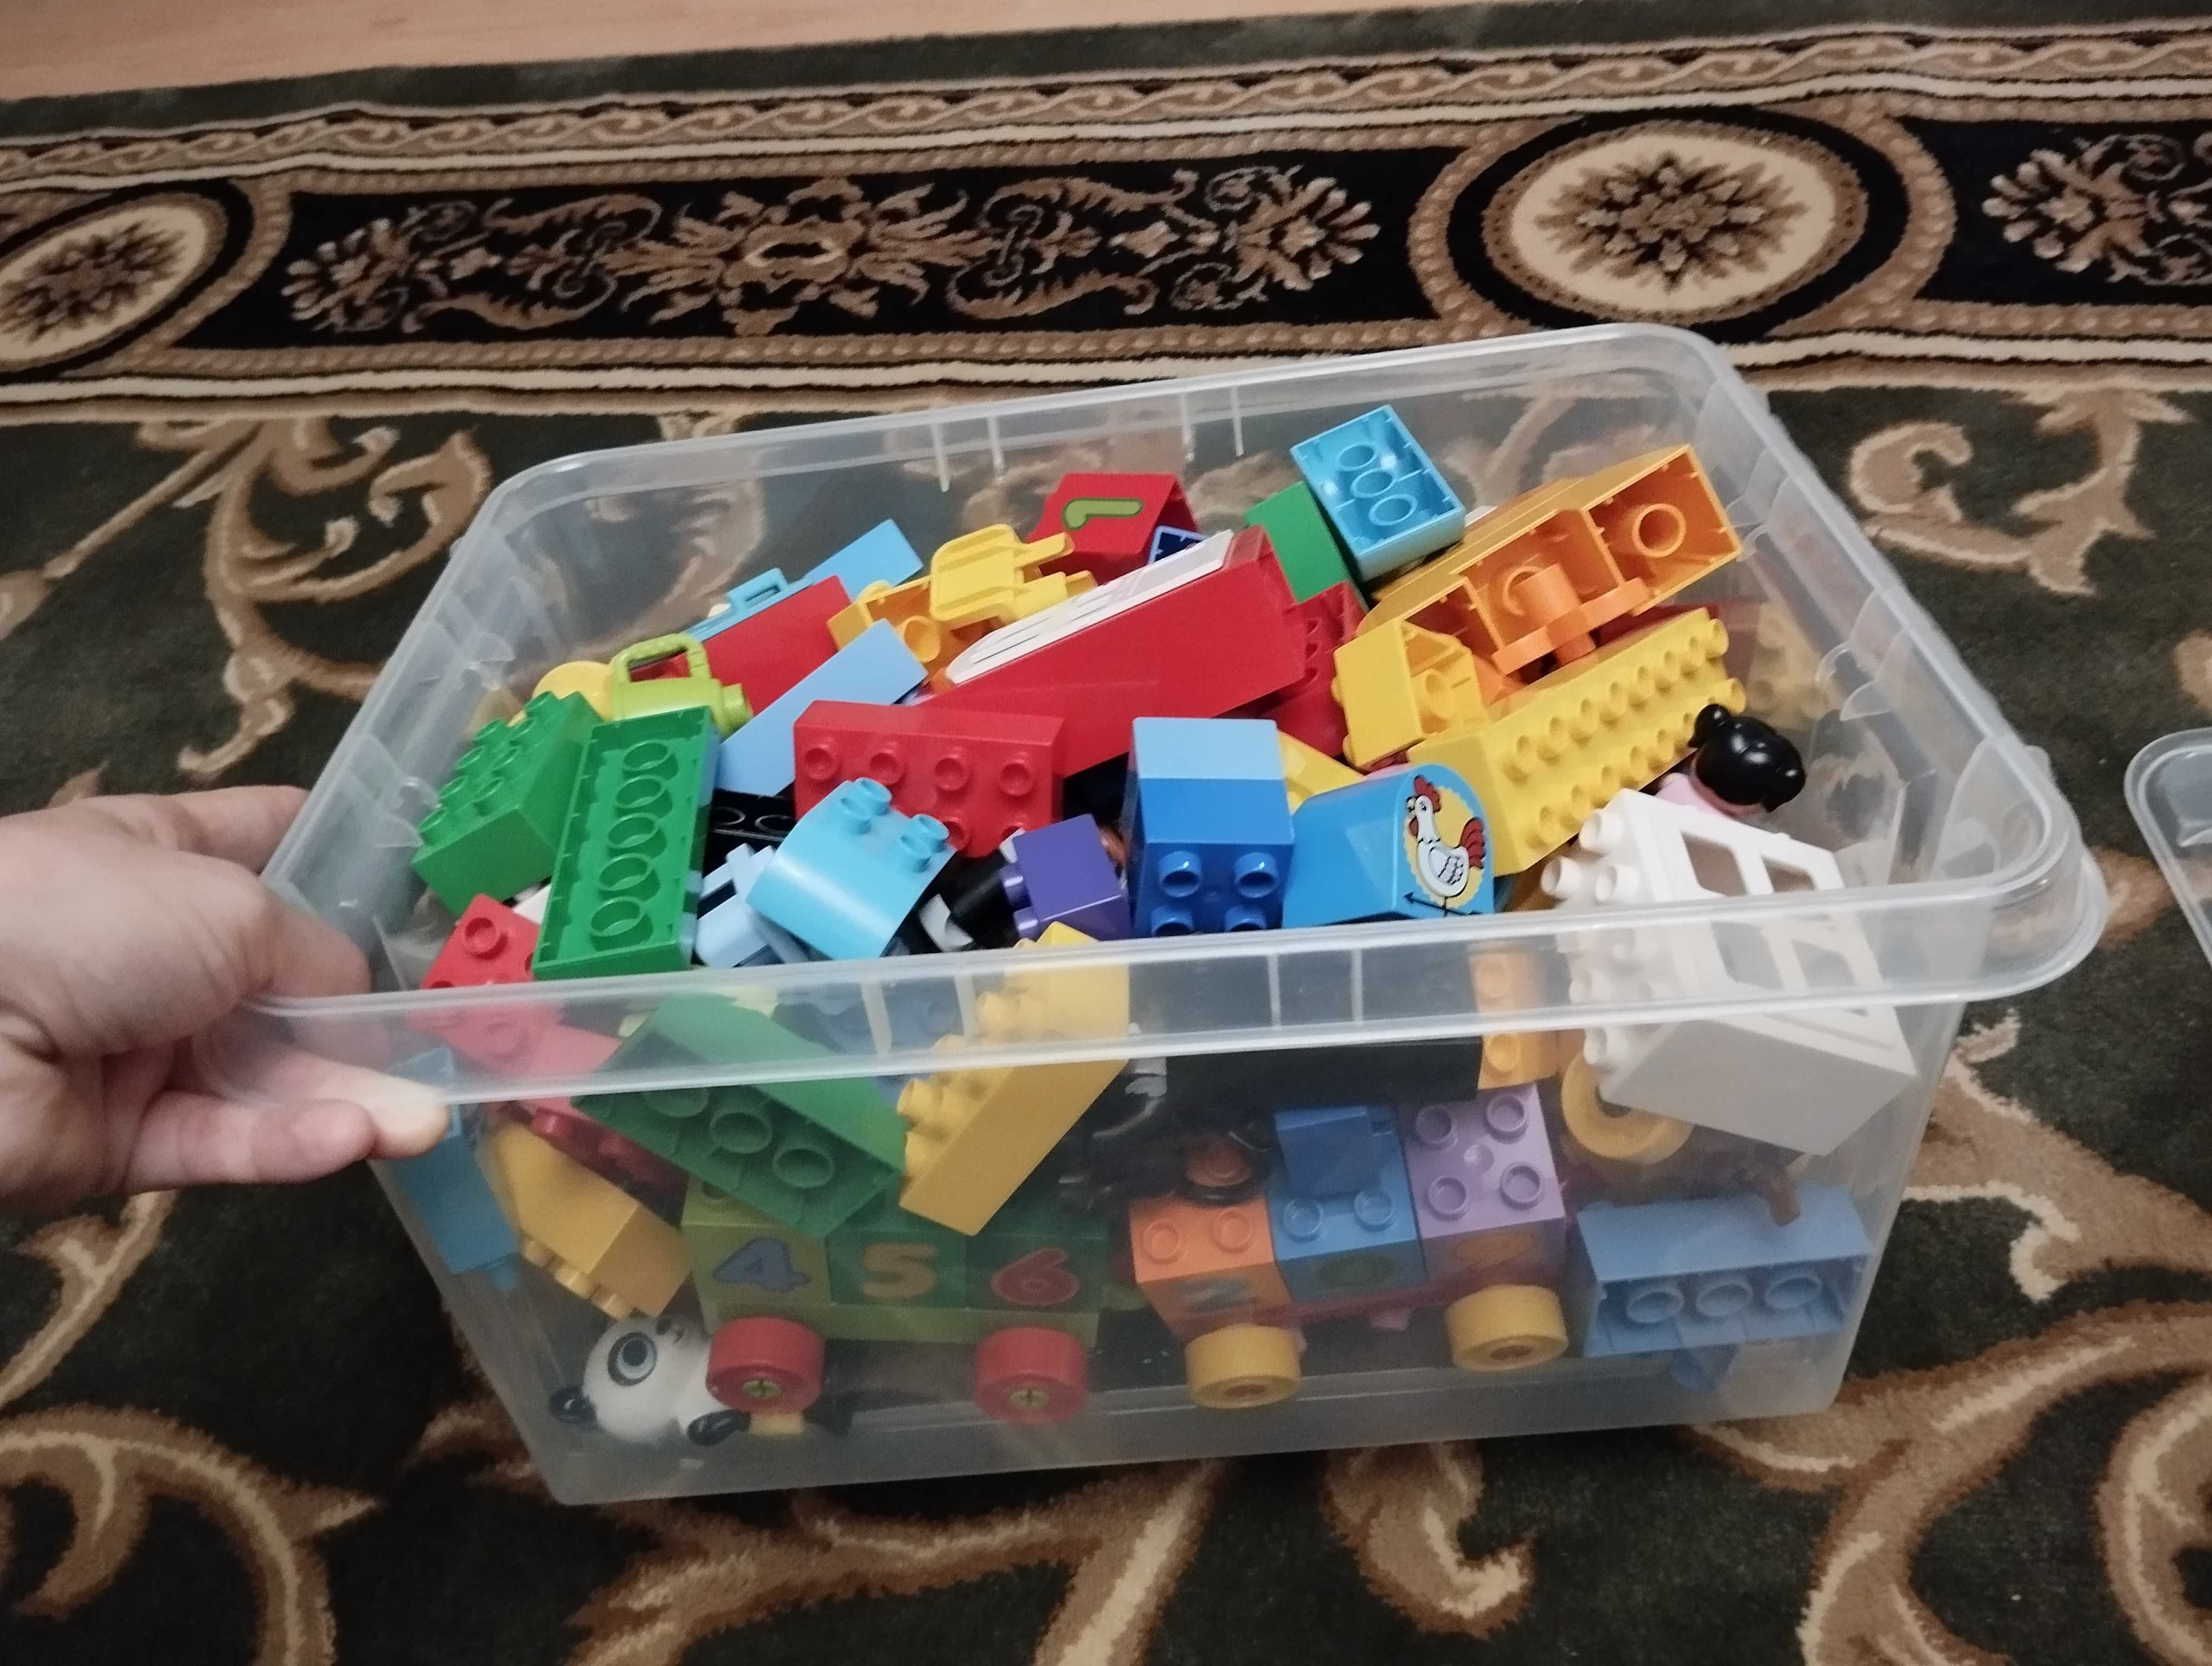 Klocki LEGO duże, pociąg, Peppa i inne